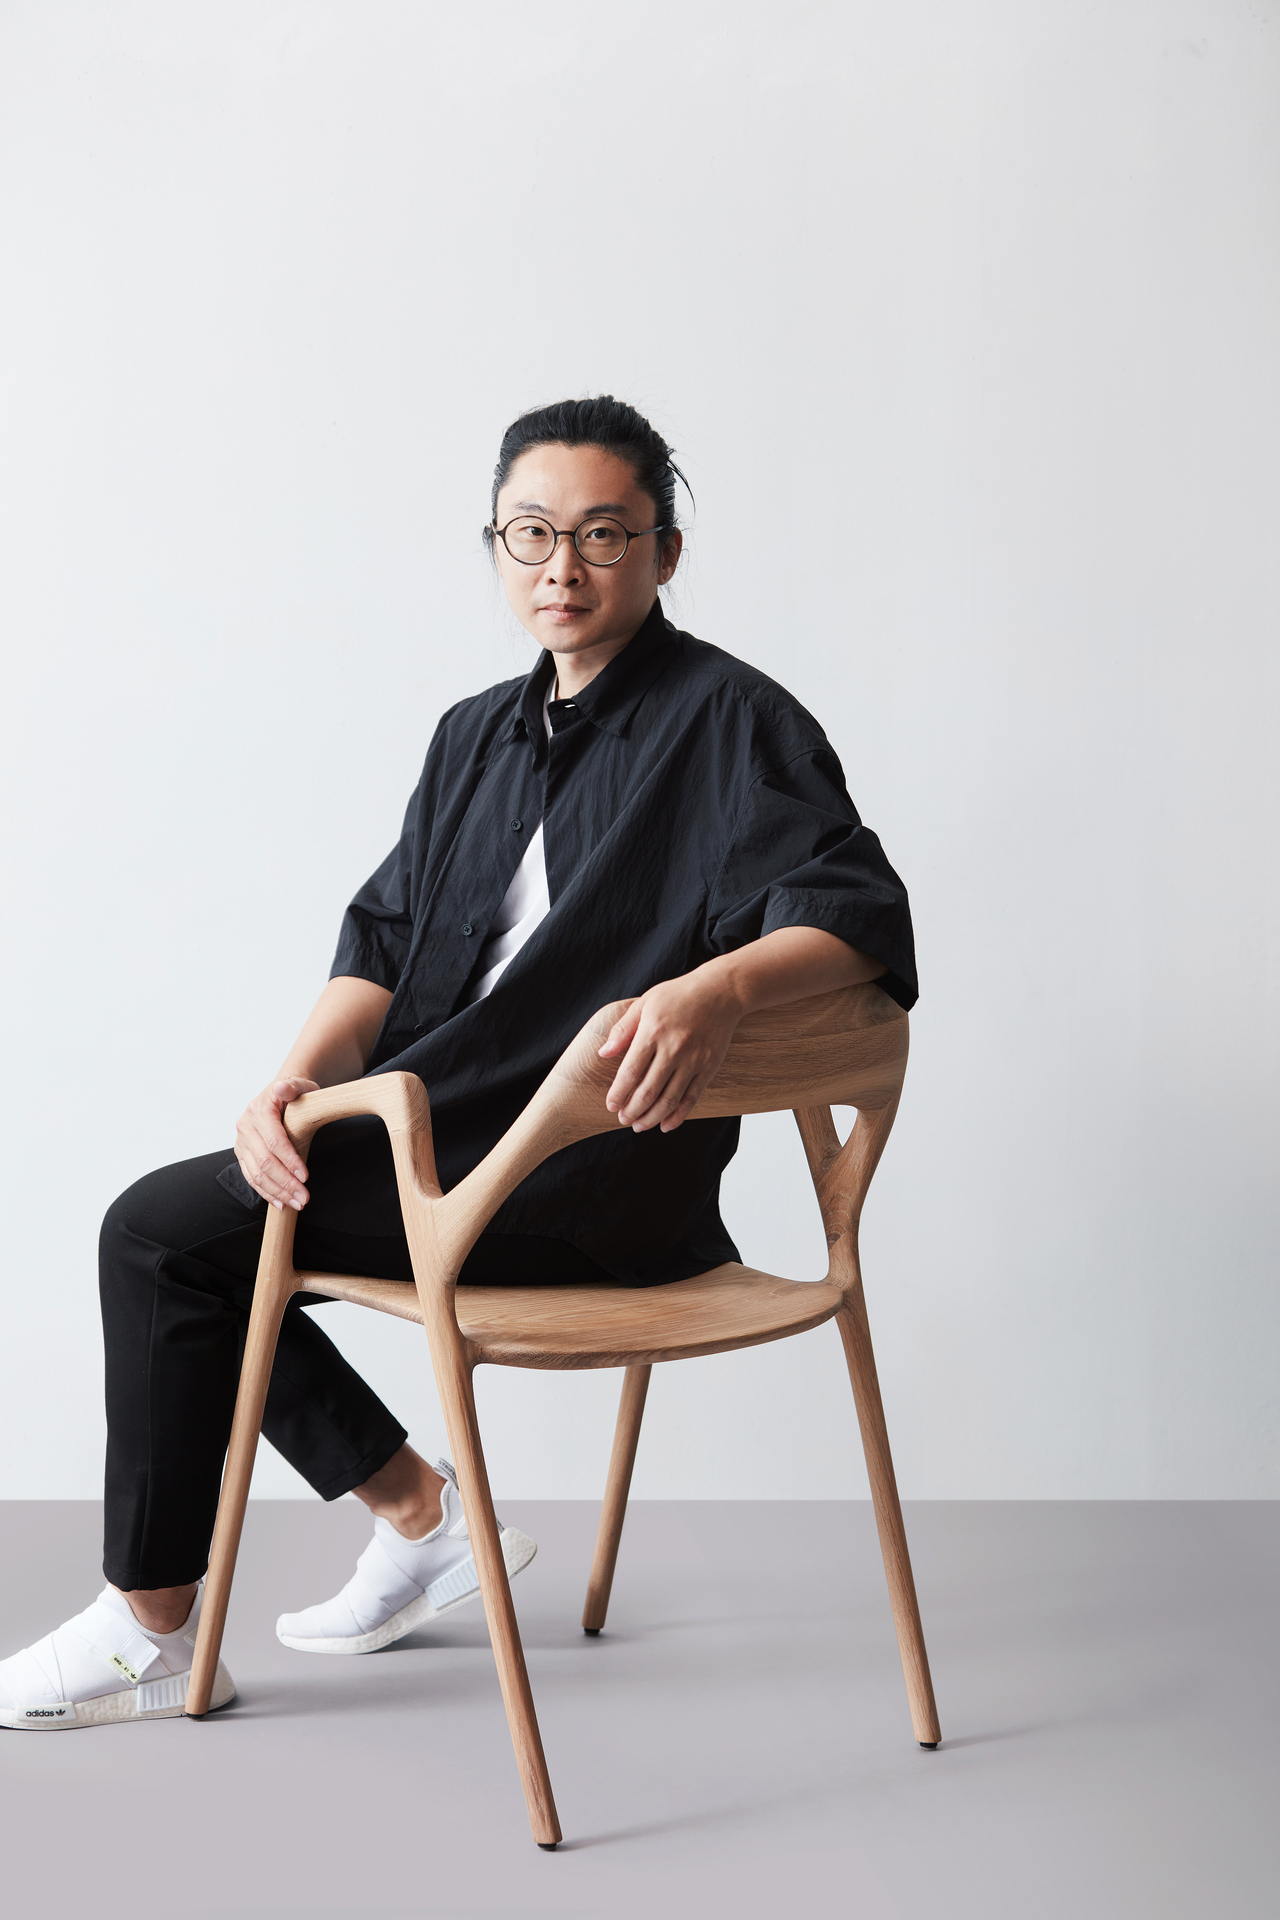 旅居加拿大的台灣建築師洪勤哲(Alan Hung），在國際設計界嶄露頭角，以其卓越的設計才華及創新思維，近日贏得加拿大Western Living Magazine 2023年度設計師獎的殊榮，成為台灣之光